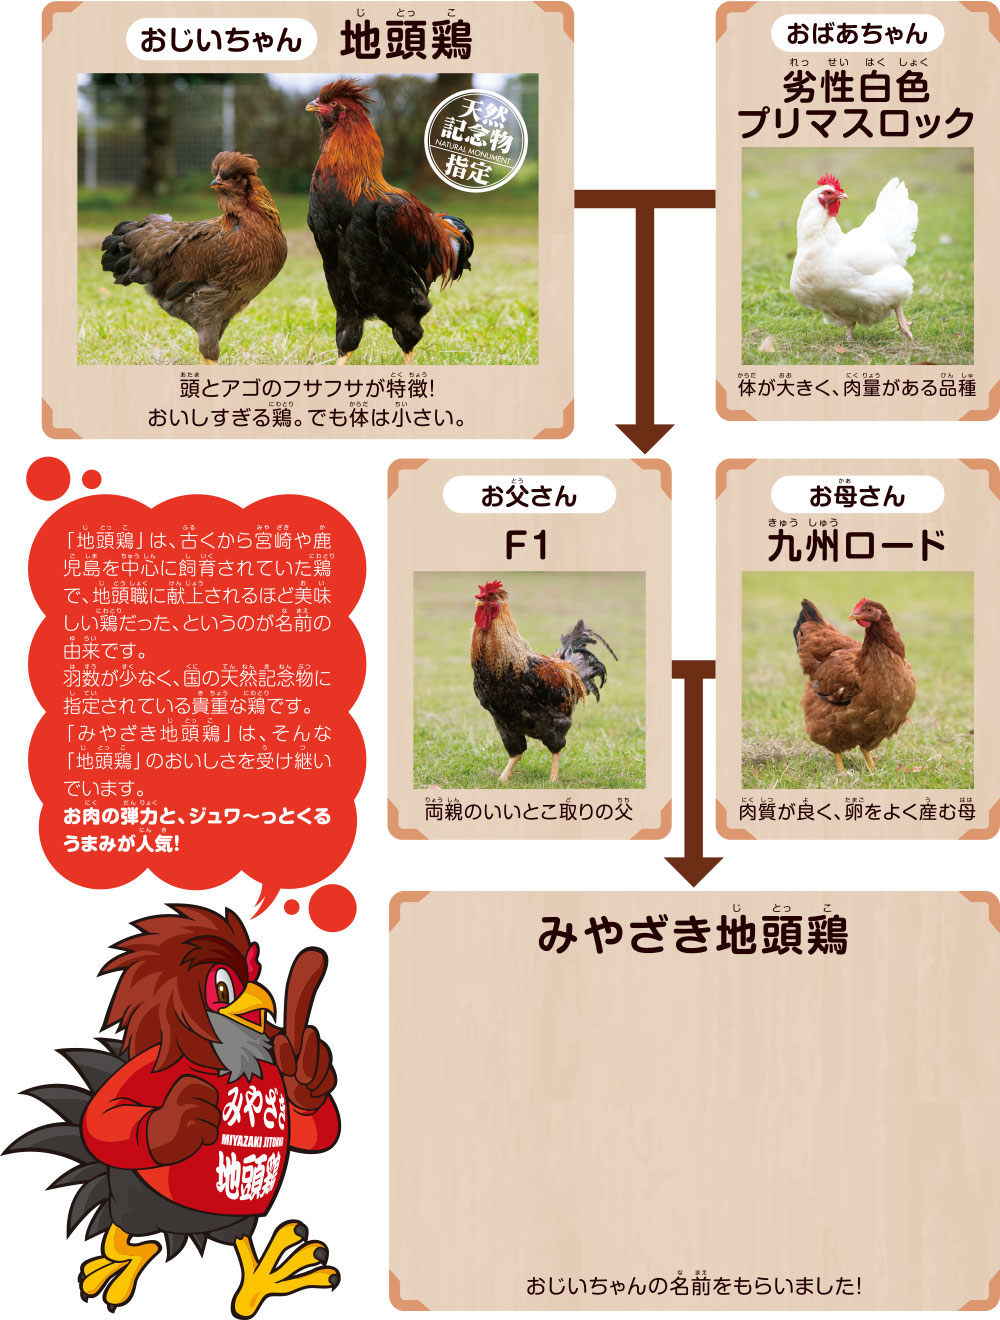 みやざき地頭鶏の系統図